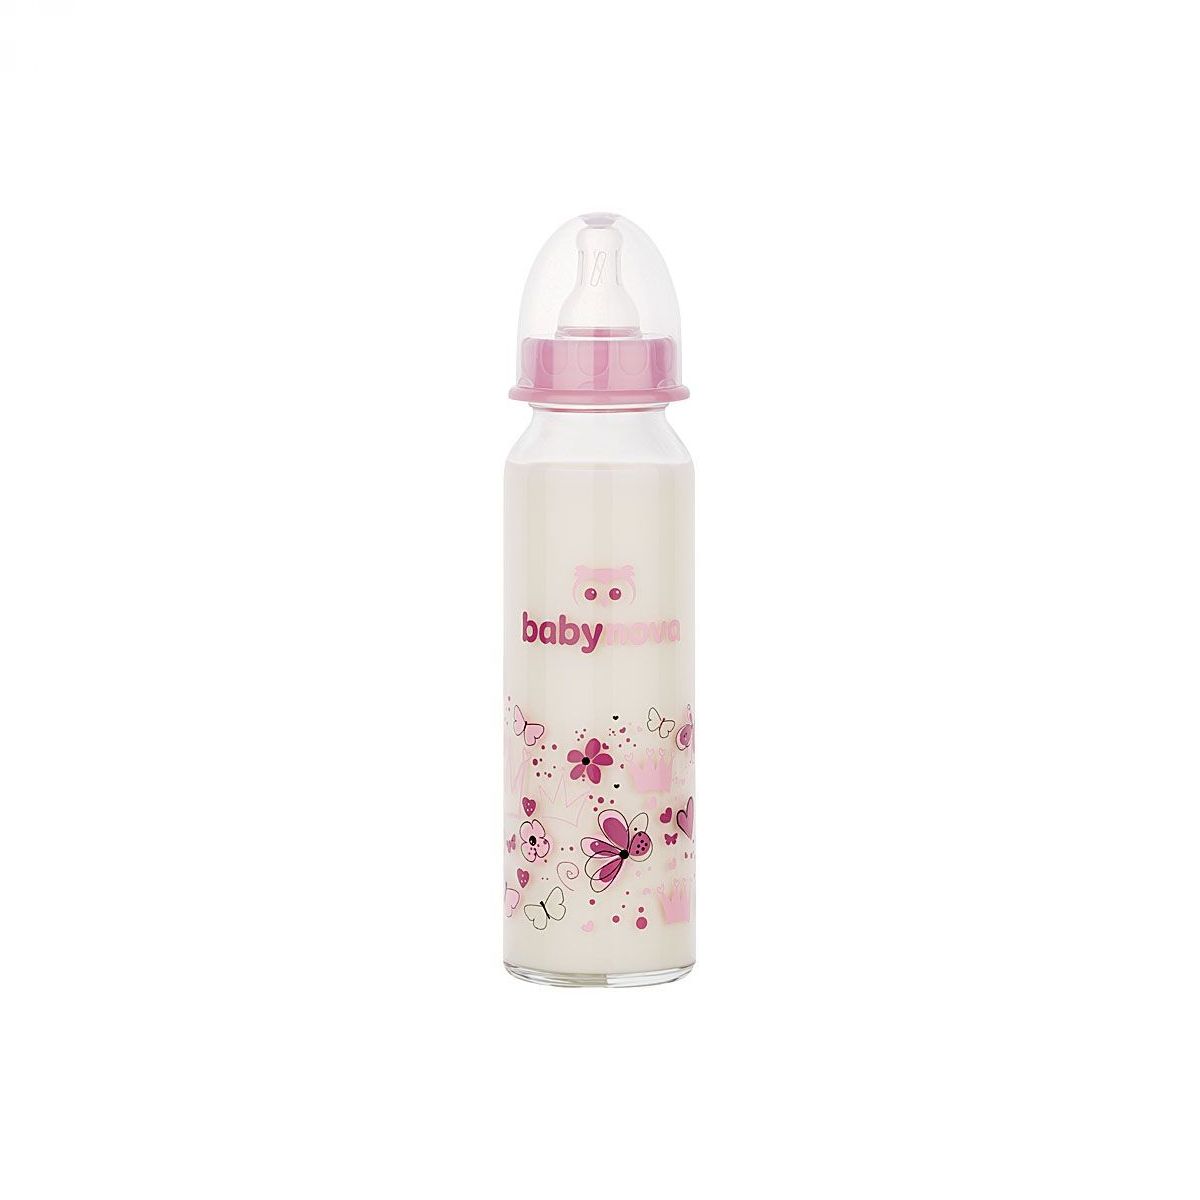 BABY-NOVA Steklena steklenička 240 ml, roza, motiv srcki/rožice